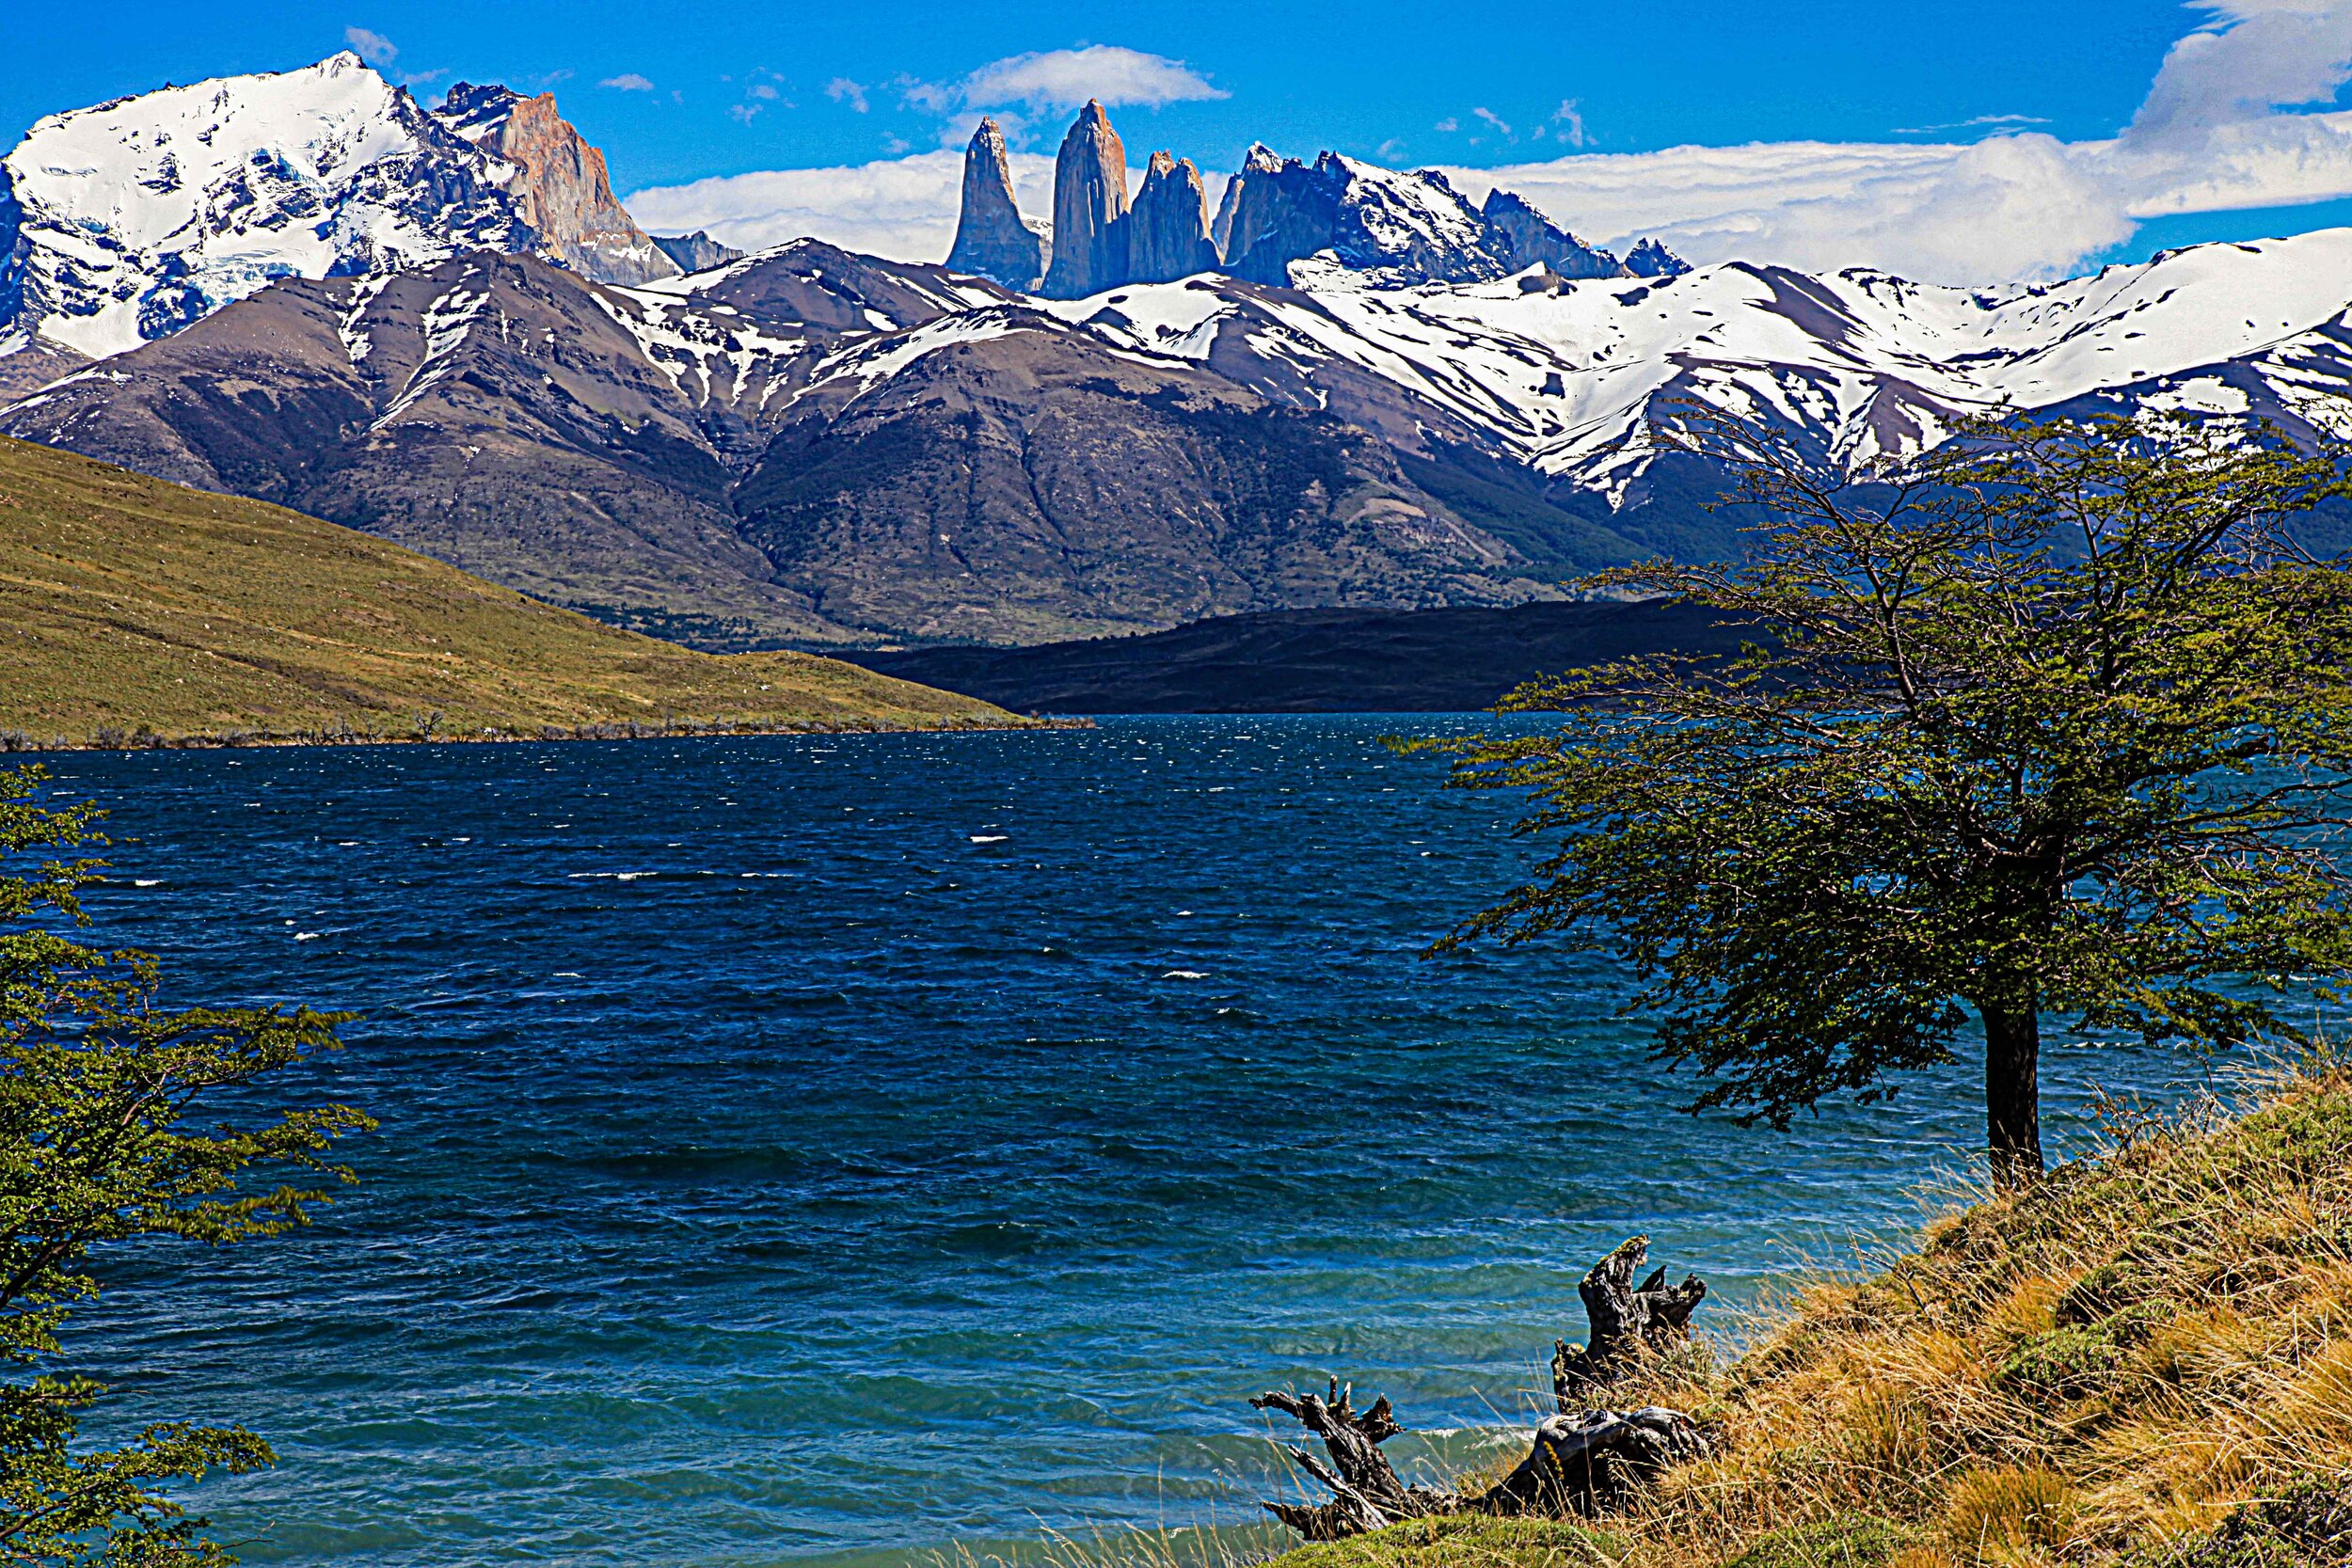  Torres Del Paine, Patagonia, Argentina         